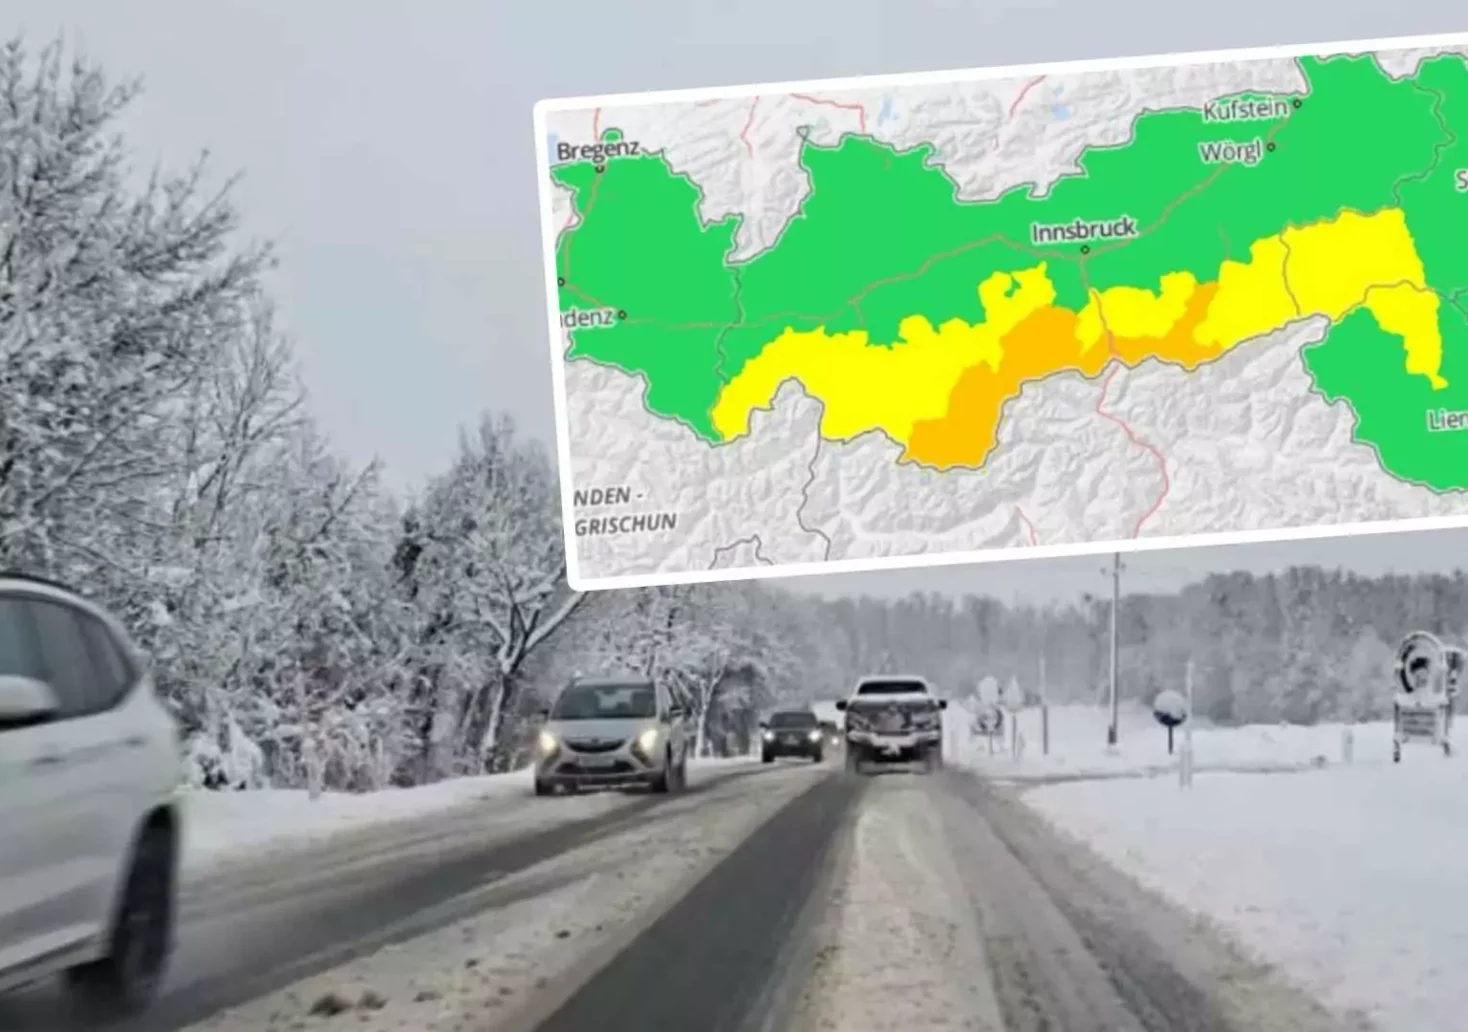 Foto in Beitrag von 5min.at: Zu sehen ist eine Schneefahrbahn und Schneefall auf einer Straße. Im Vordergrund die Warnung der "GeoSphere Austria".